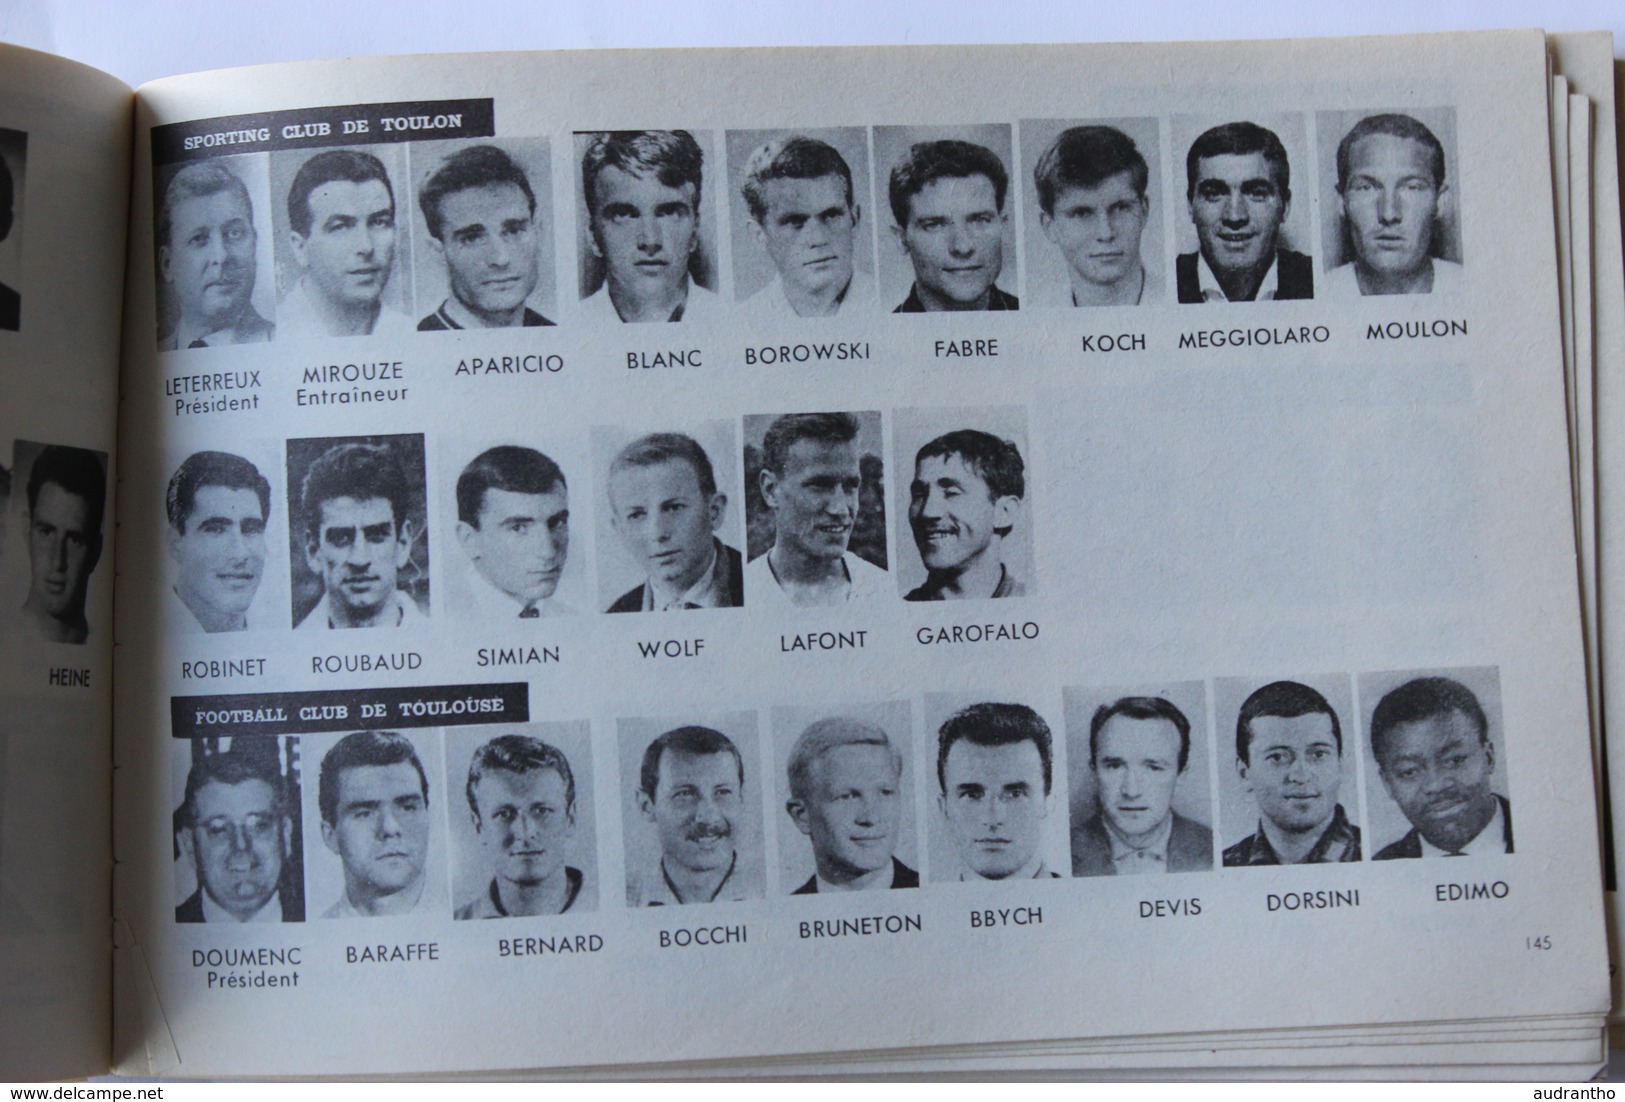 Bible pratique football saison 1964 1965 Glowacki Hidalgo Jean Djorkaeff Novak Suaudau Herbin